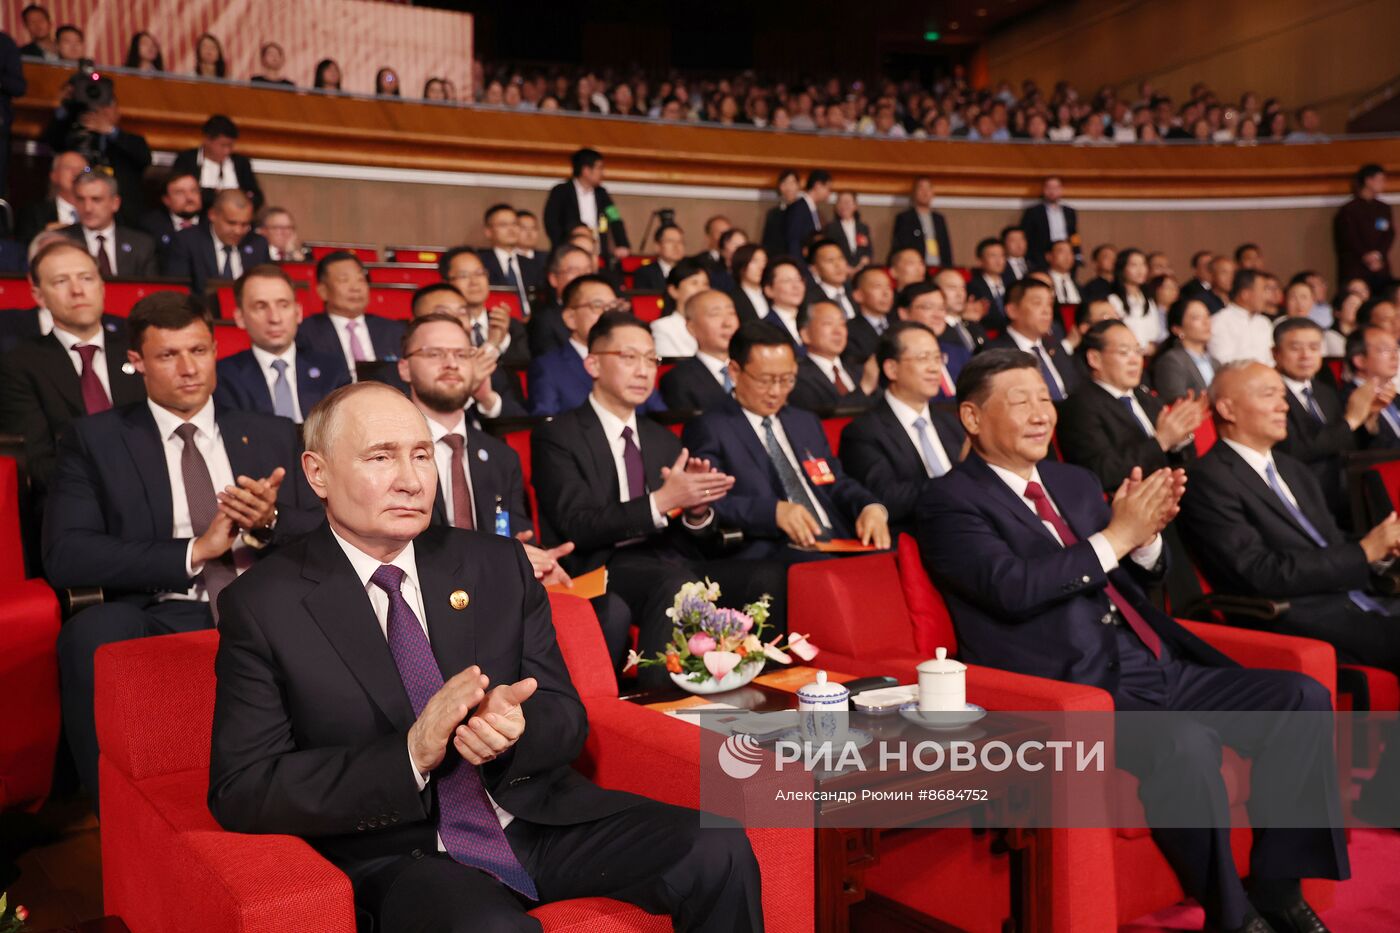 Государственный визит президента Владимира Путина в Китай